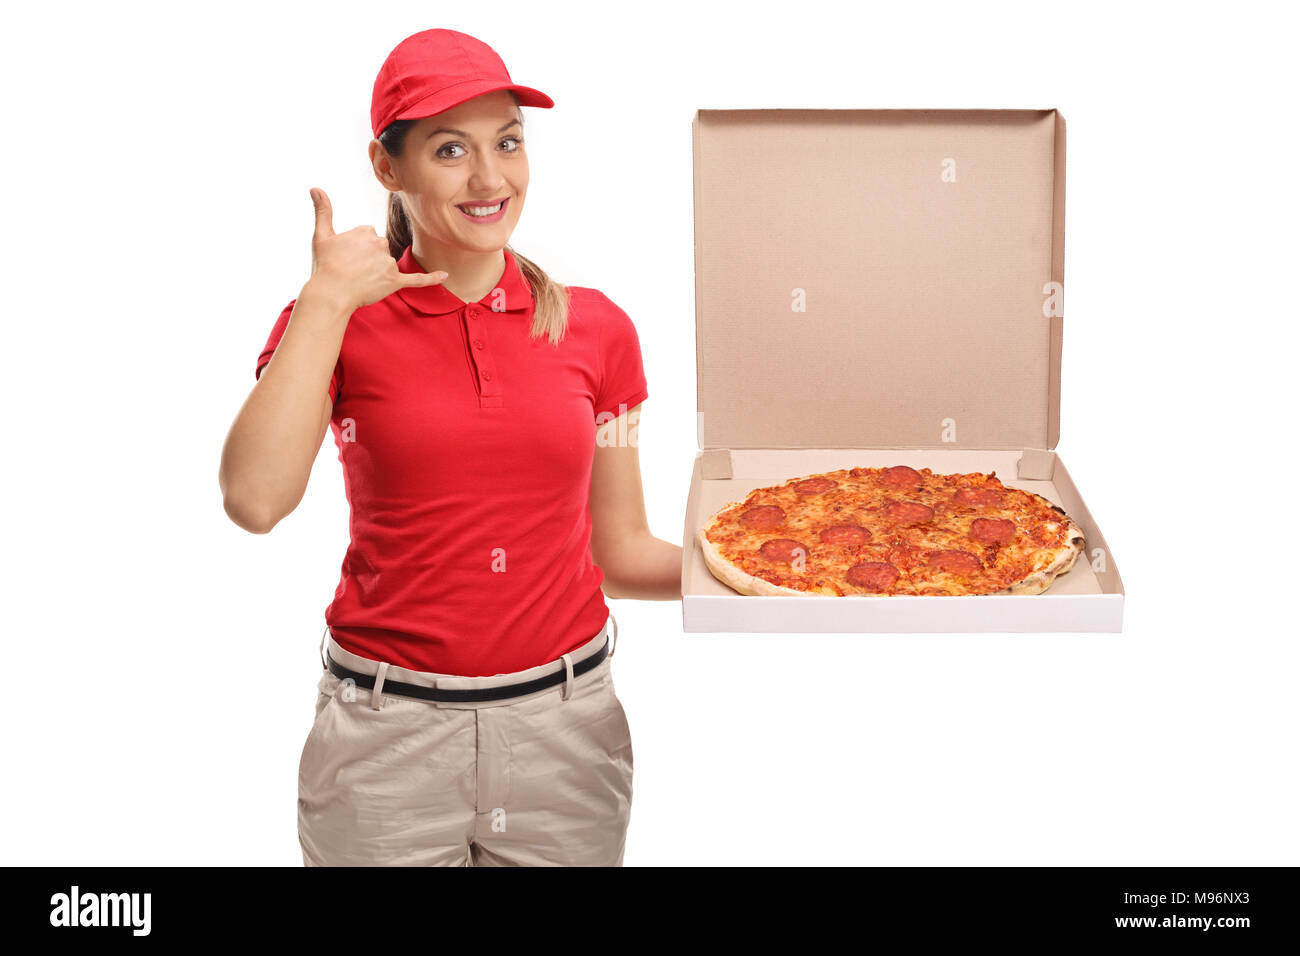 фотошоп из пиццы девушка фото 115